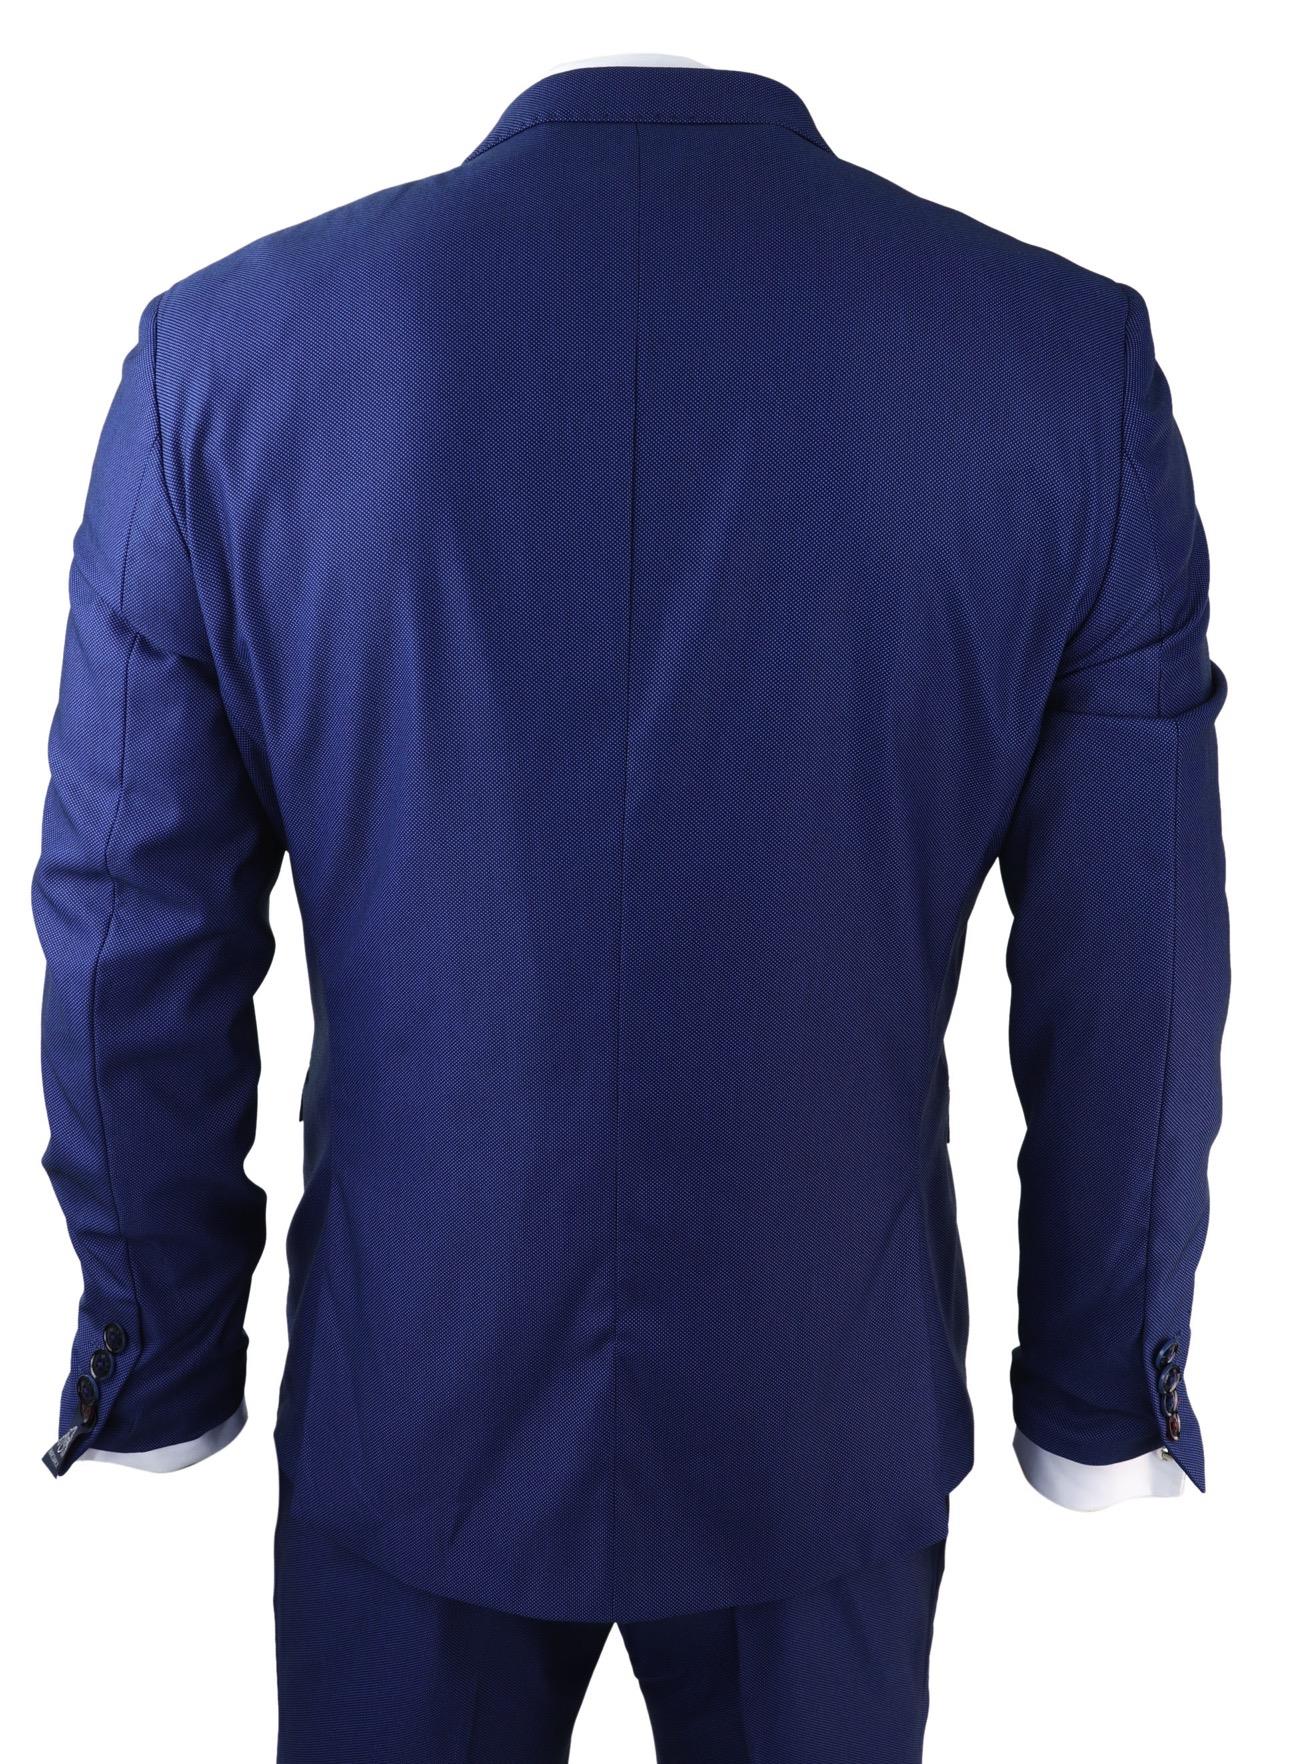 Mens Classic Blue Suit  Royal Blue Suit for Mens - Danezon